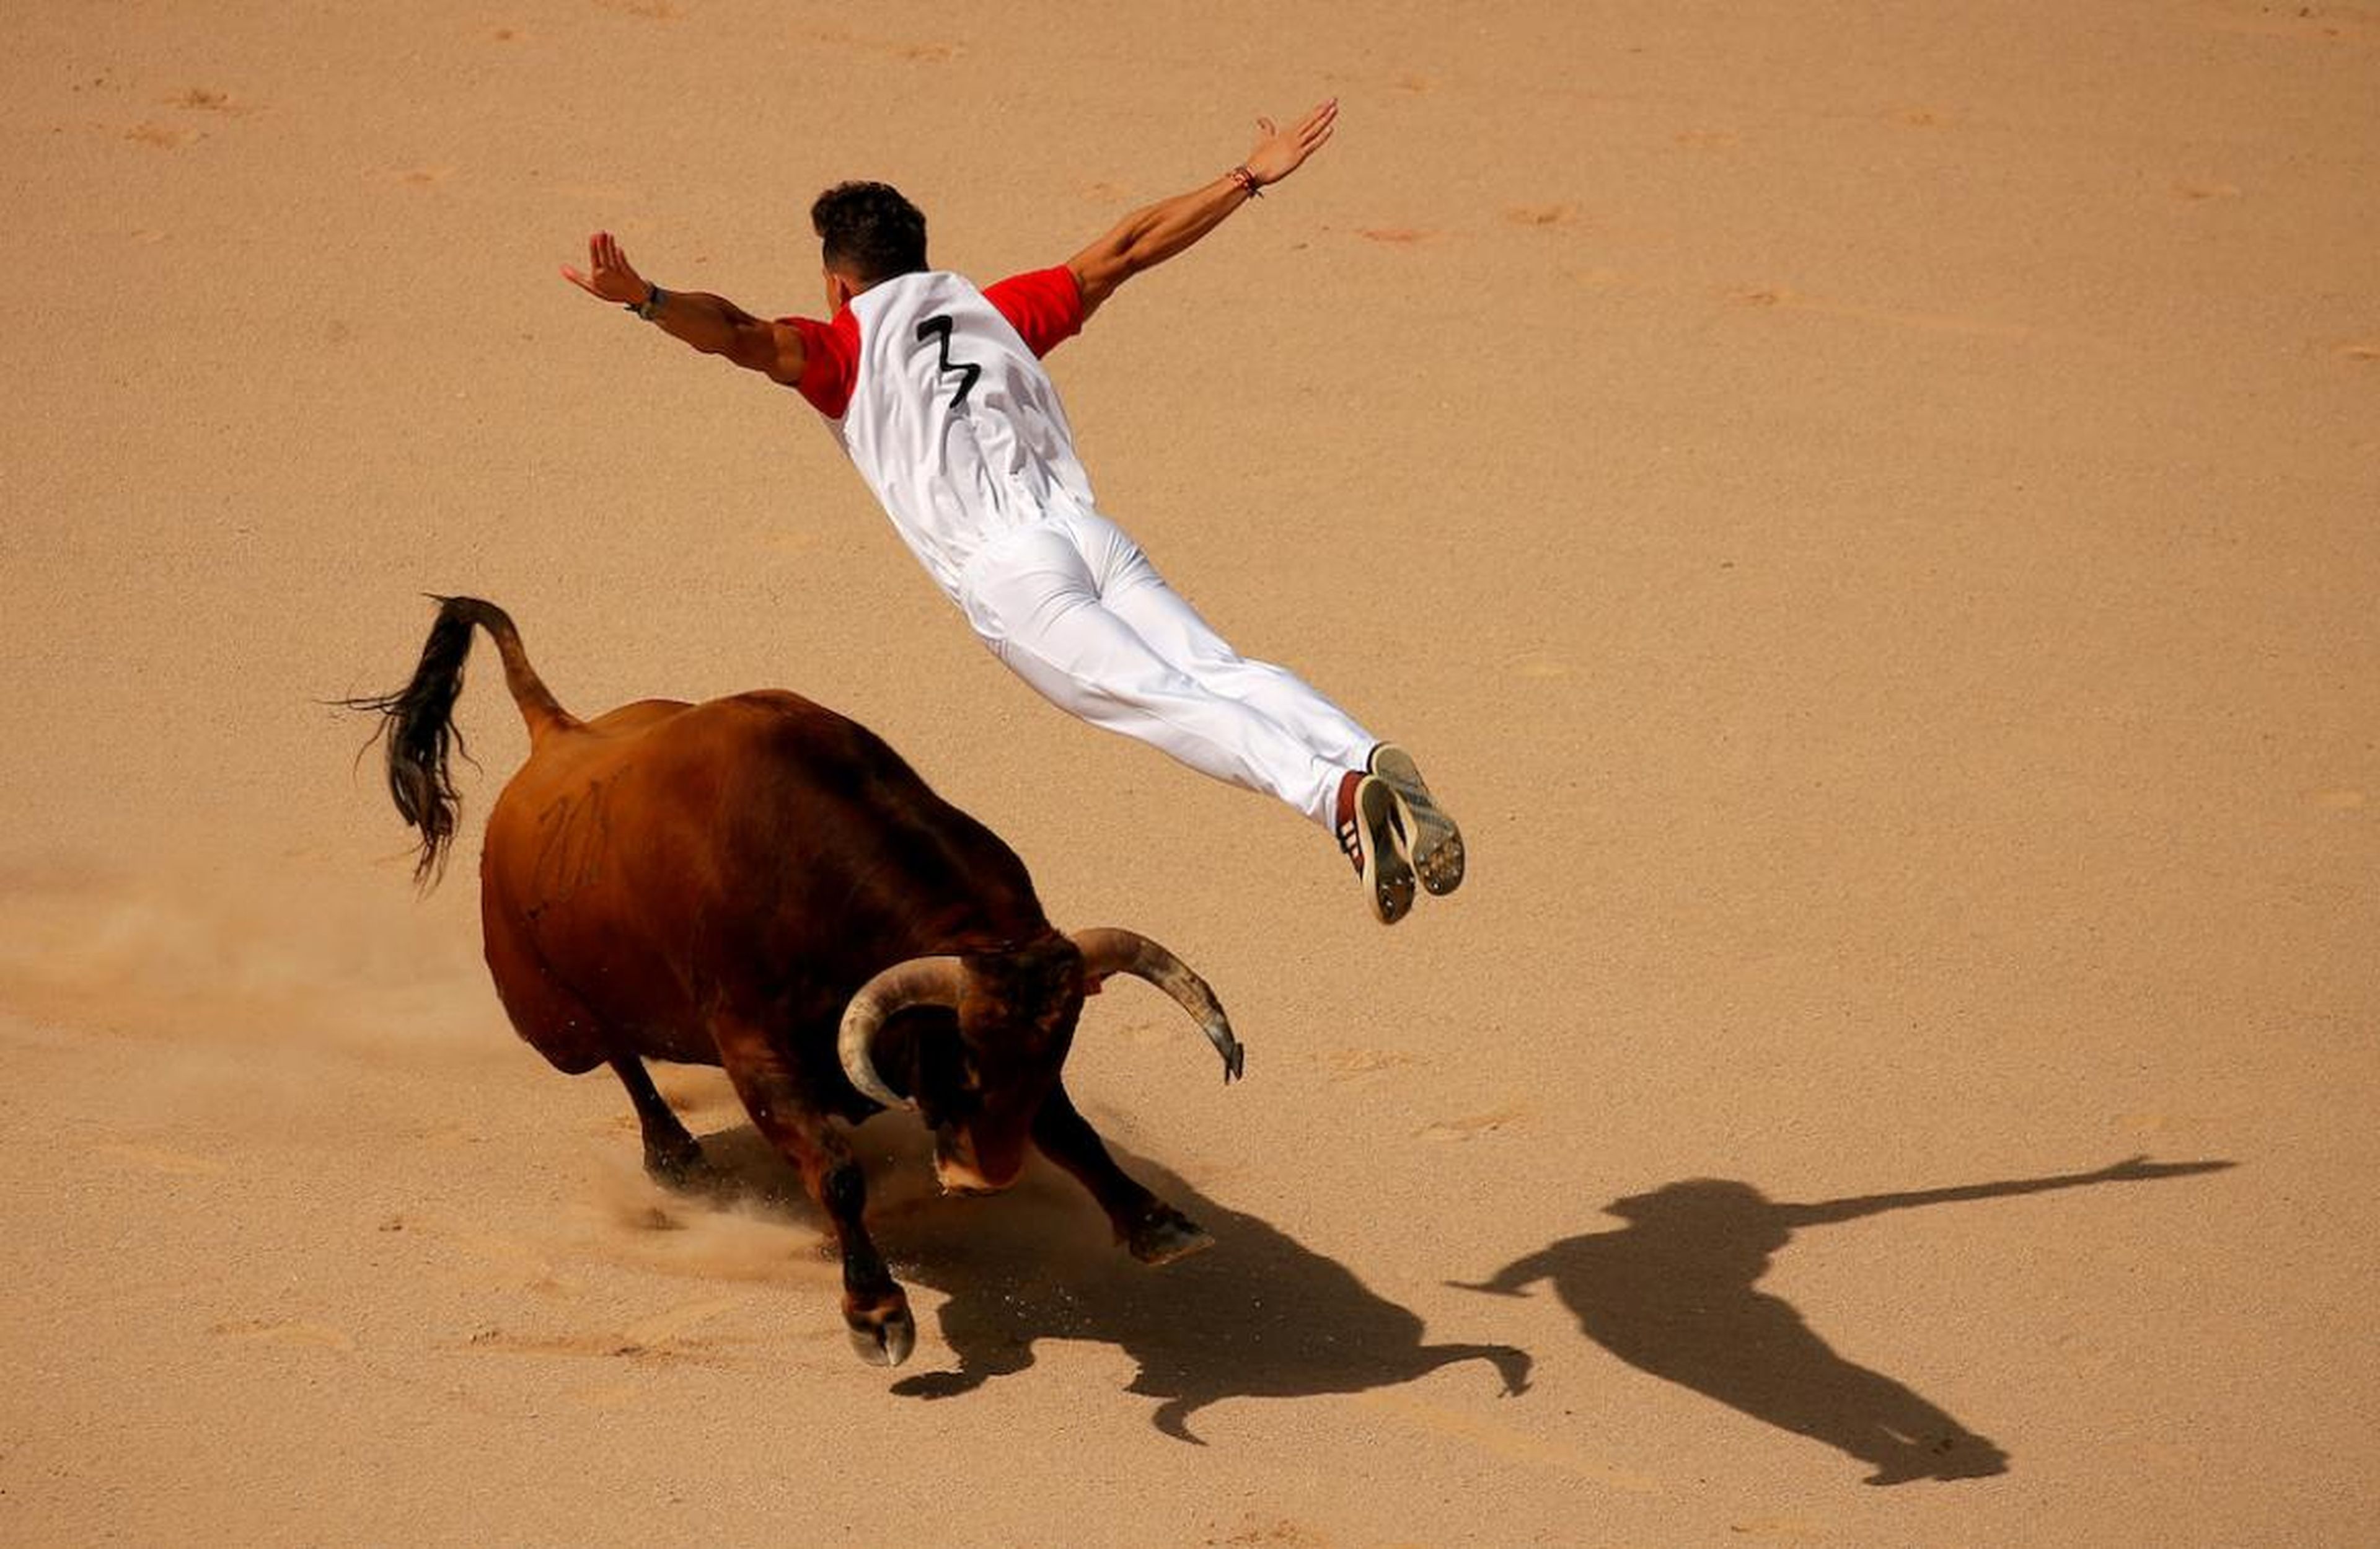 Un recortador salta sobre un toro durante un concurso en la plaza de toros Monumetal de Pamplona durante las fiestas de San Fermín, el 13 de julio.